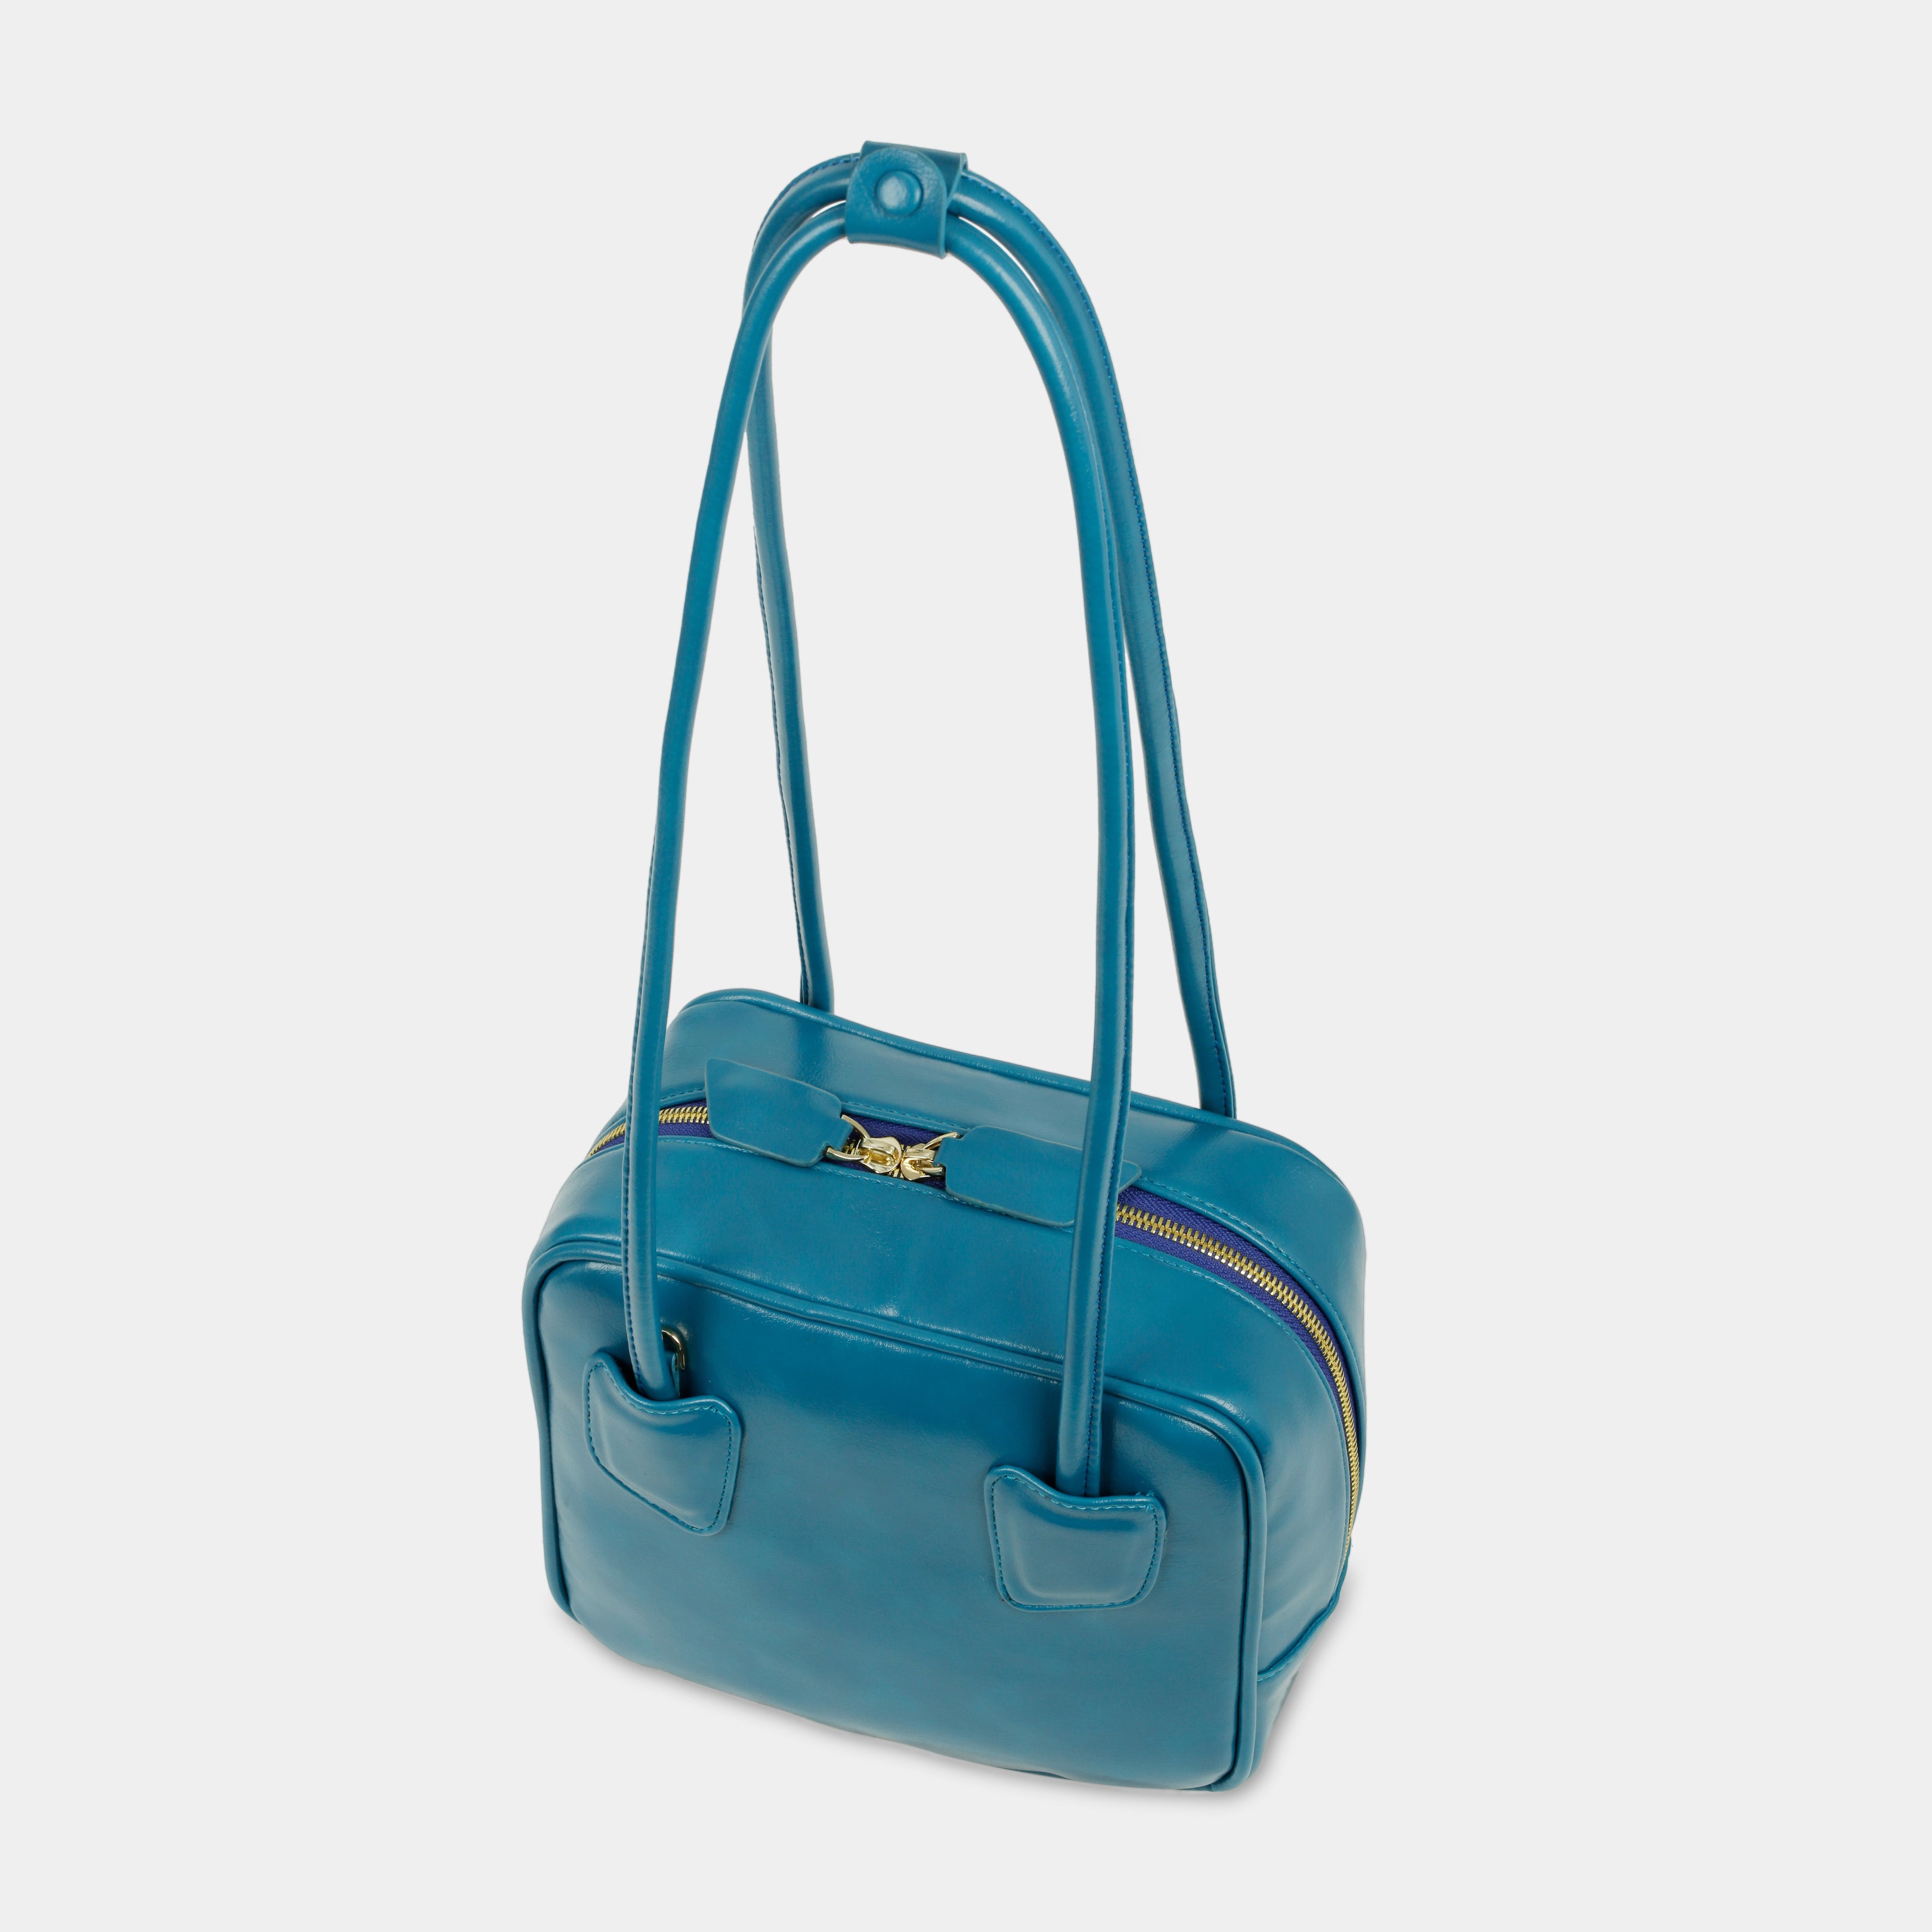 Túi xách SANDWICH màu xanh dương